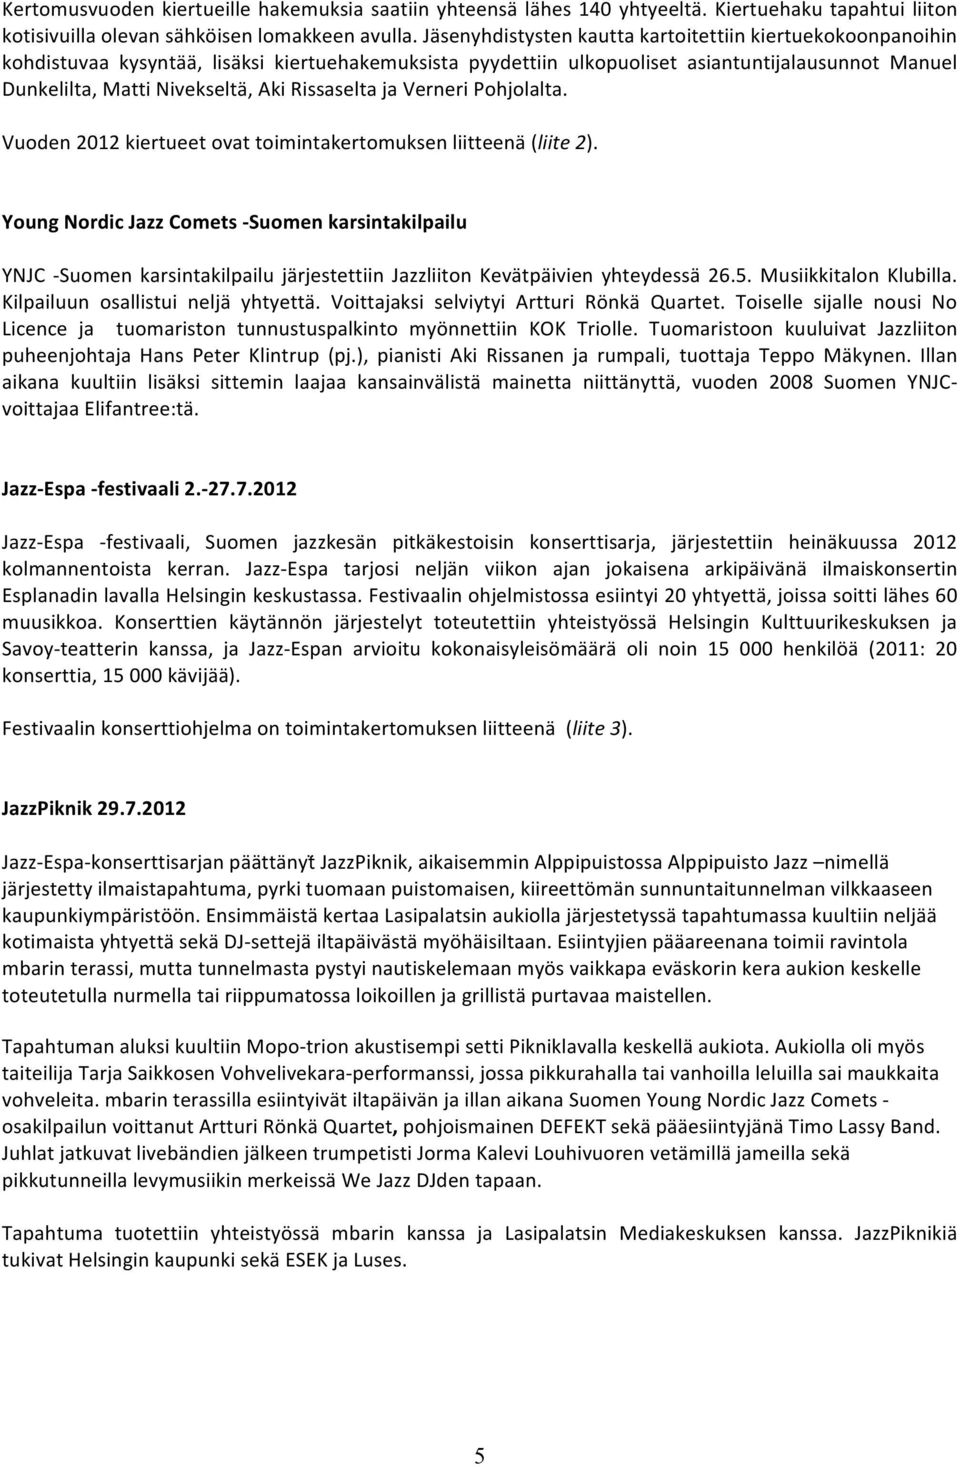 Rissaselta ja Verneri Pohjolalta. Vuoden 2012 kiertueet ovat toimintakertomuksen liitteenä (liite 2).